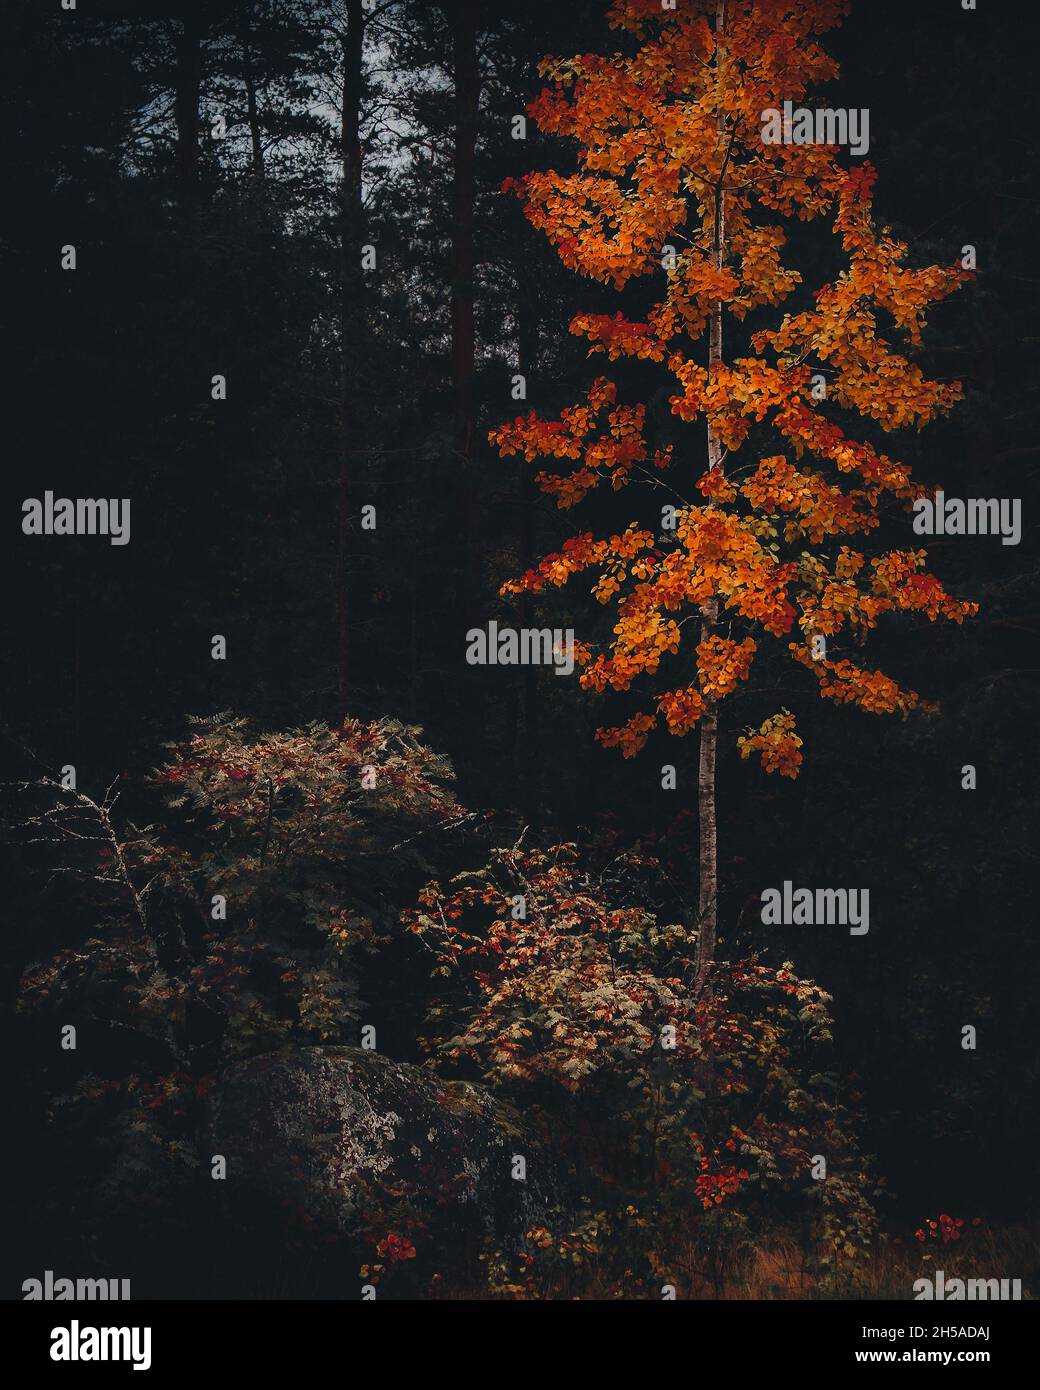 Herbst im dunklen dichten Wald. Einsamer Baum mit orangefarbenen und gelben  Blättern. Oktober-Szene. Herbstsaison. Natürliche Töne. Moody Feeling. Wilde  Natur. Dunkelheit Stockfotografie - Alamy